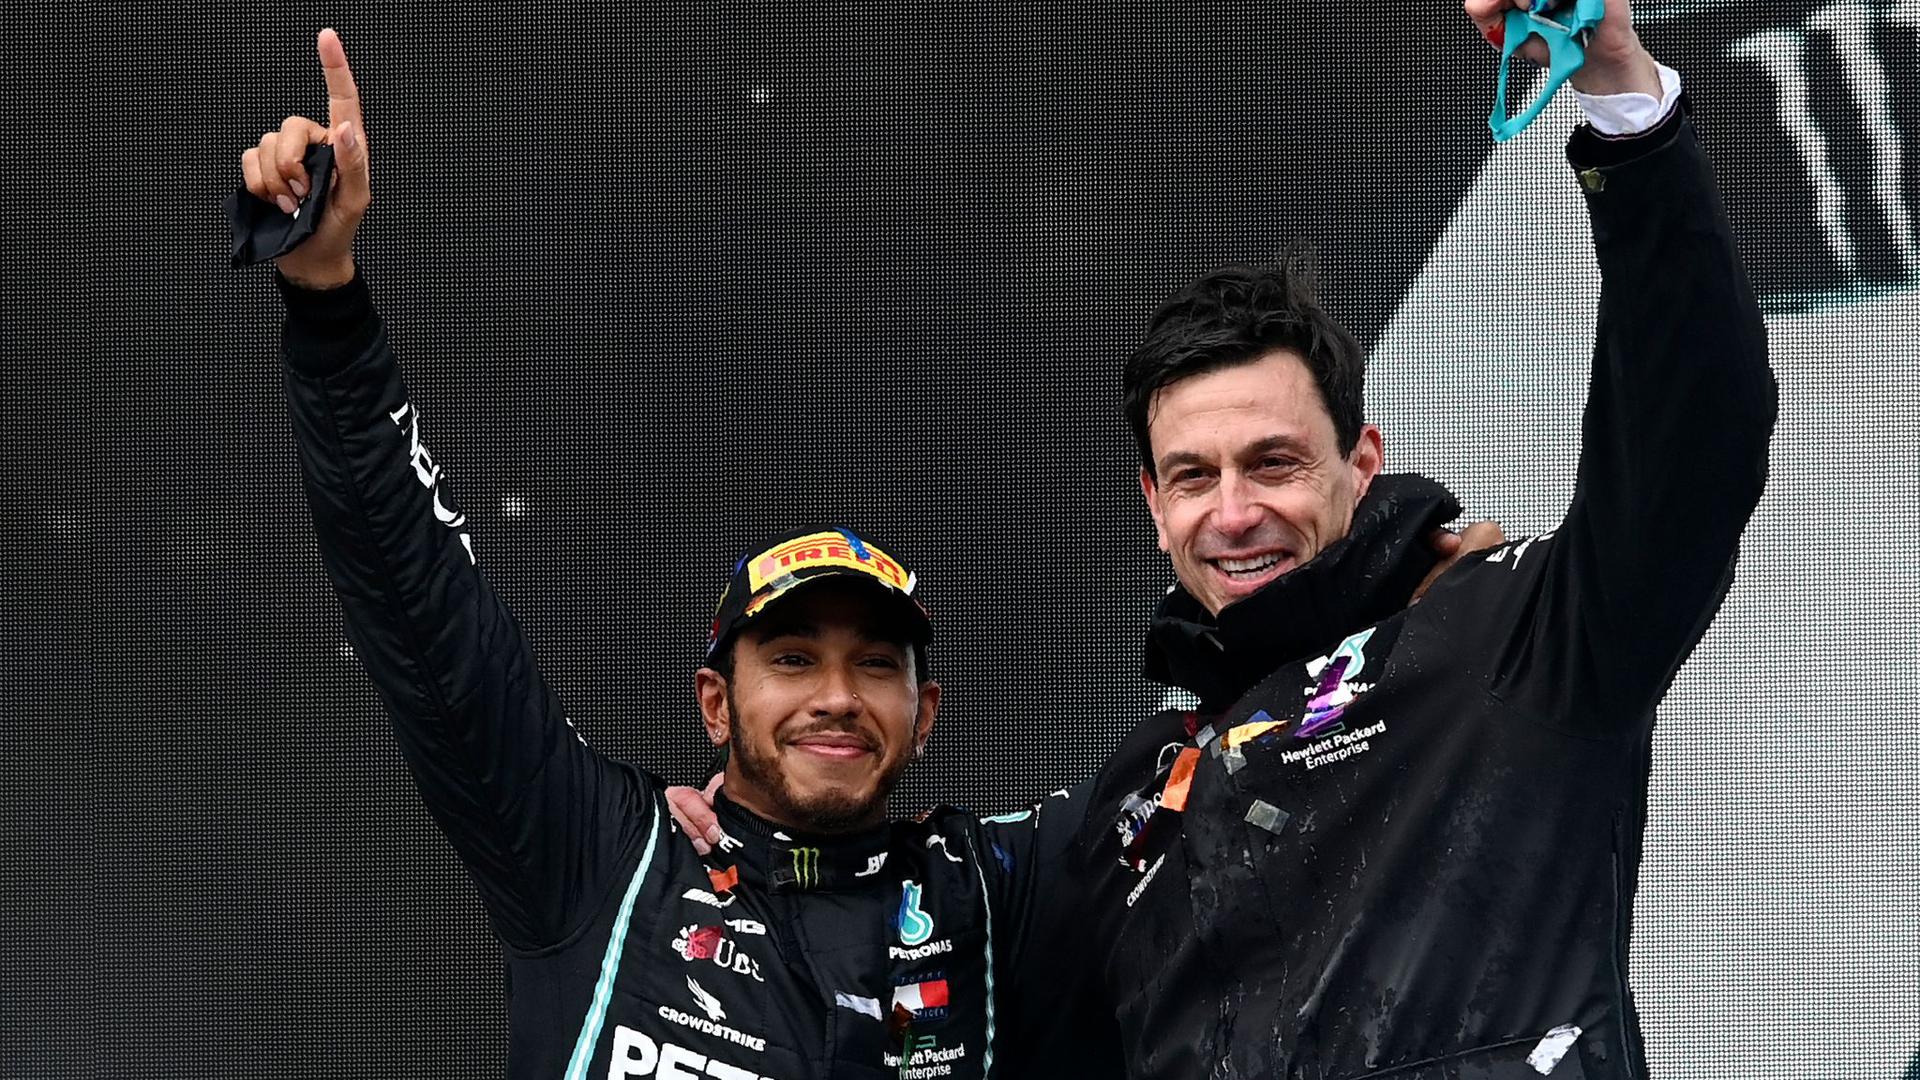 Arbeiten weiter in der Formel 1 zusammen: Lewis Hamilton (l) und Toto Wolff, Motorsportchef vom Team Mercedes.